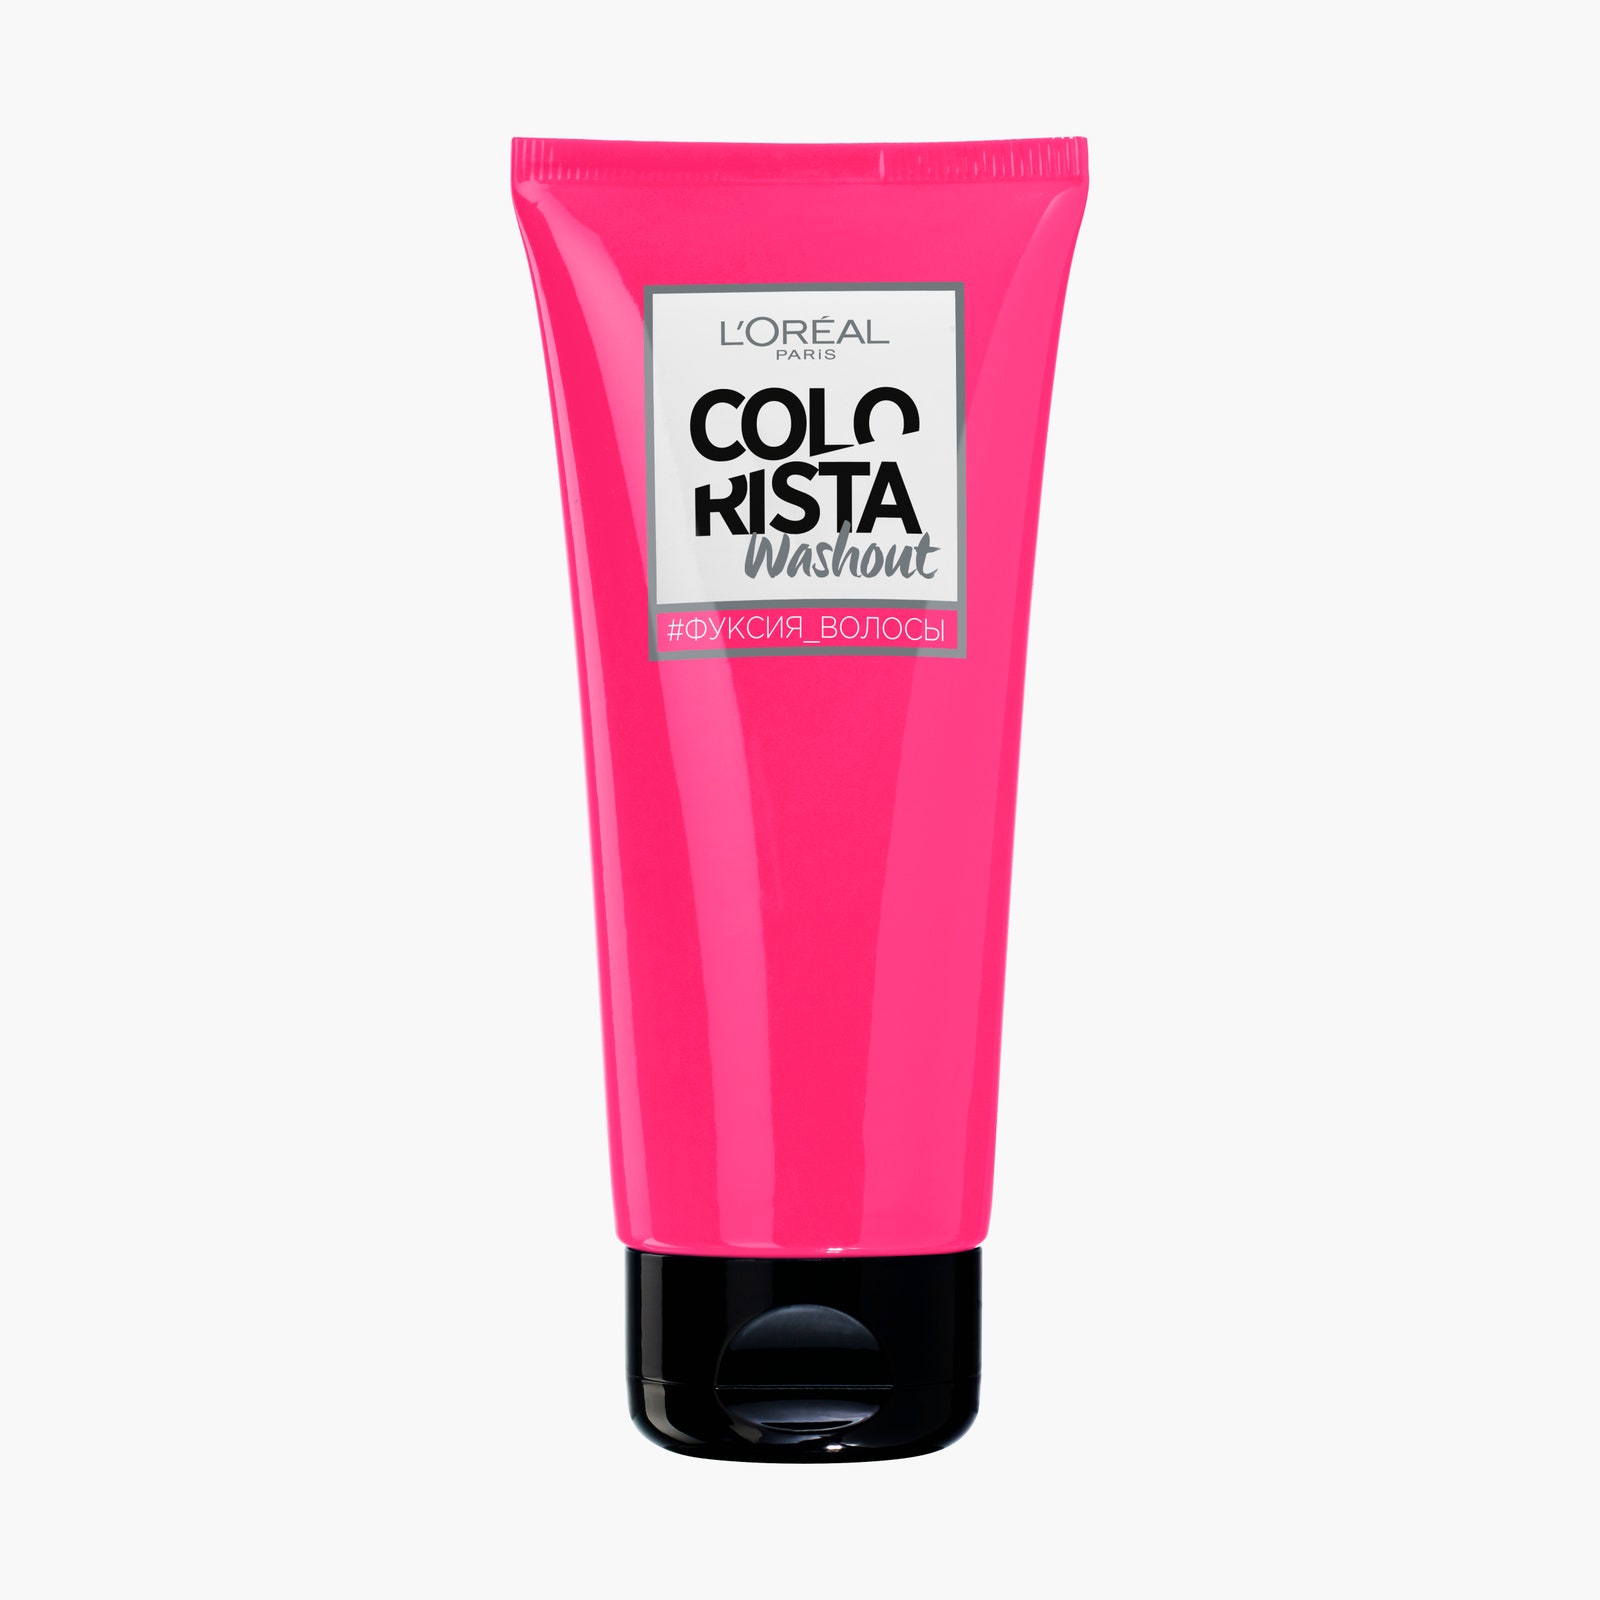 Смываемая бальзамкраска для волос Colorista Washout L'Oral Paris 564 рубля